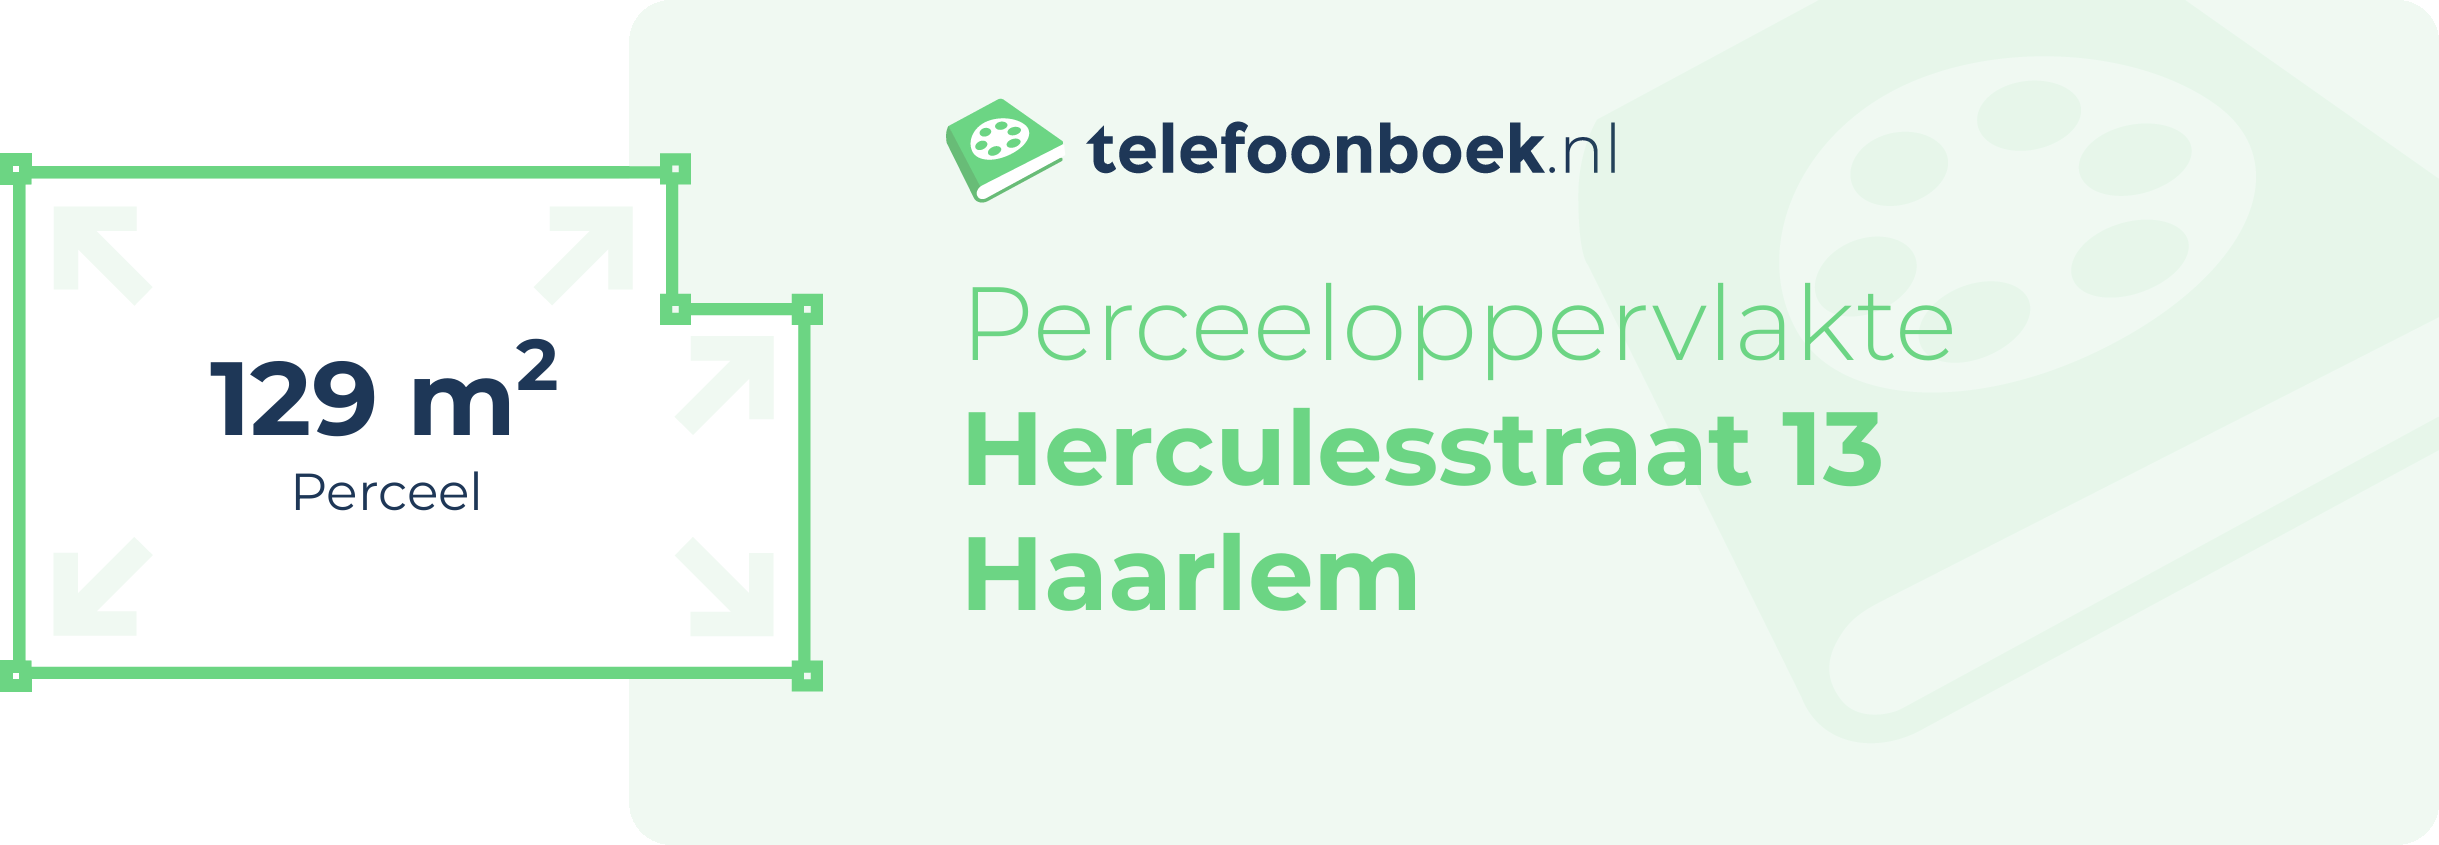 Perceeloppervlakte Herculesstraat 13 Haarlem